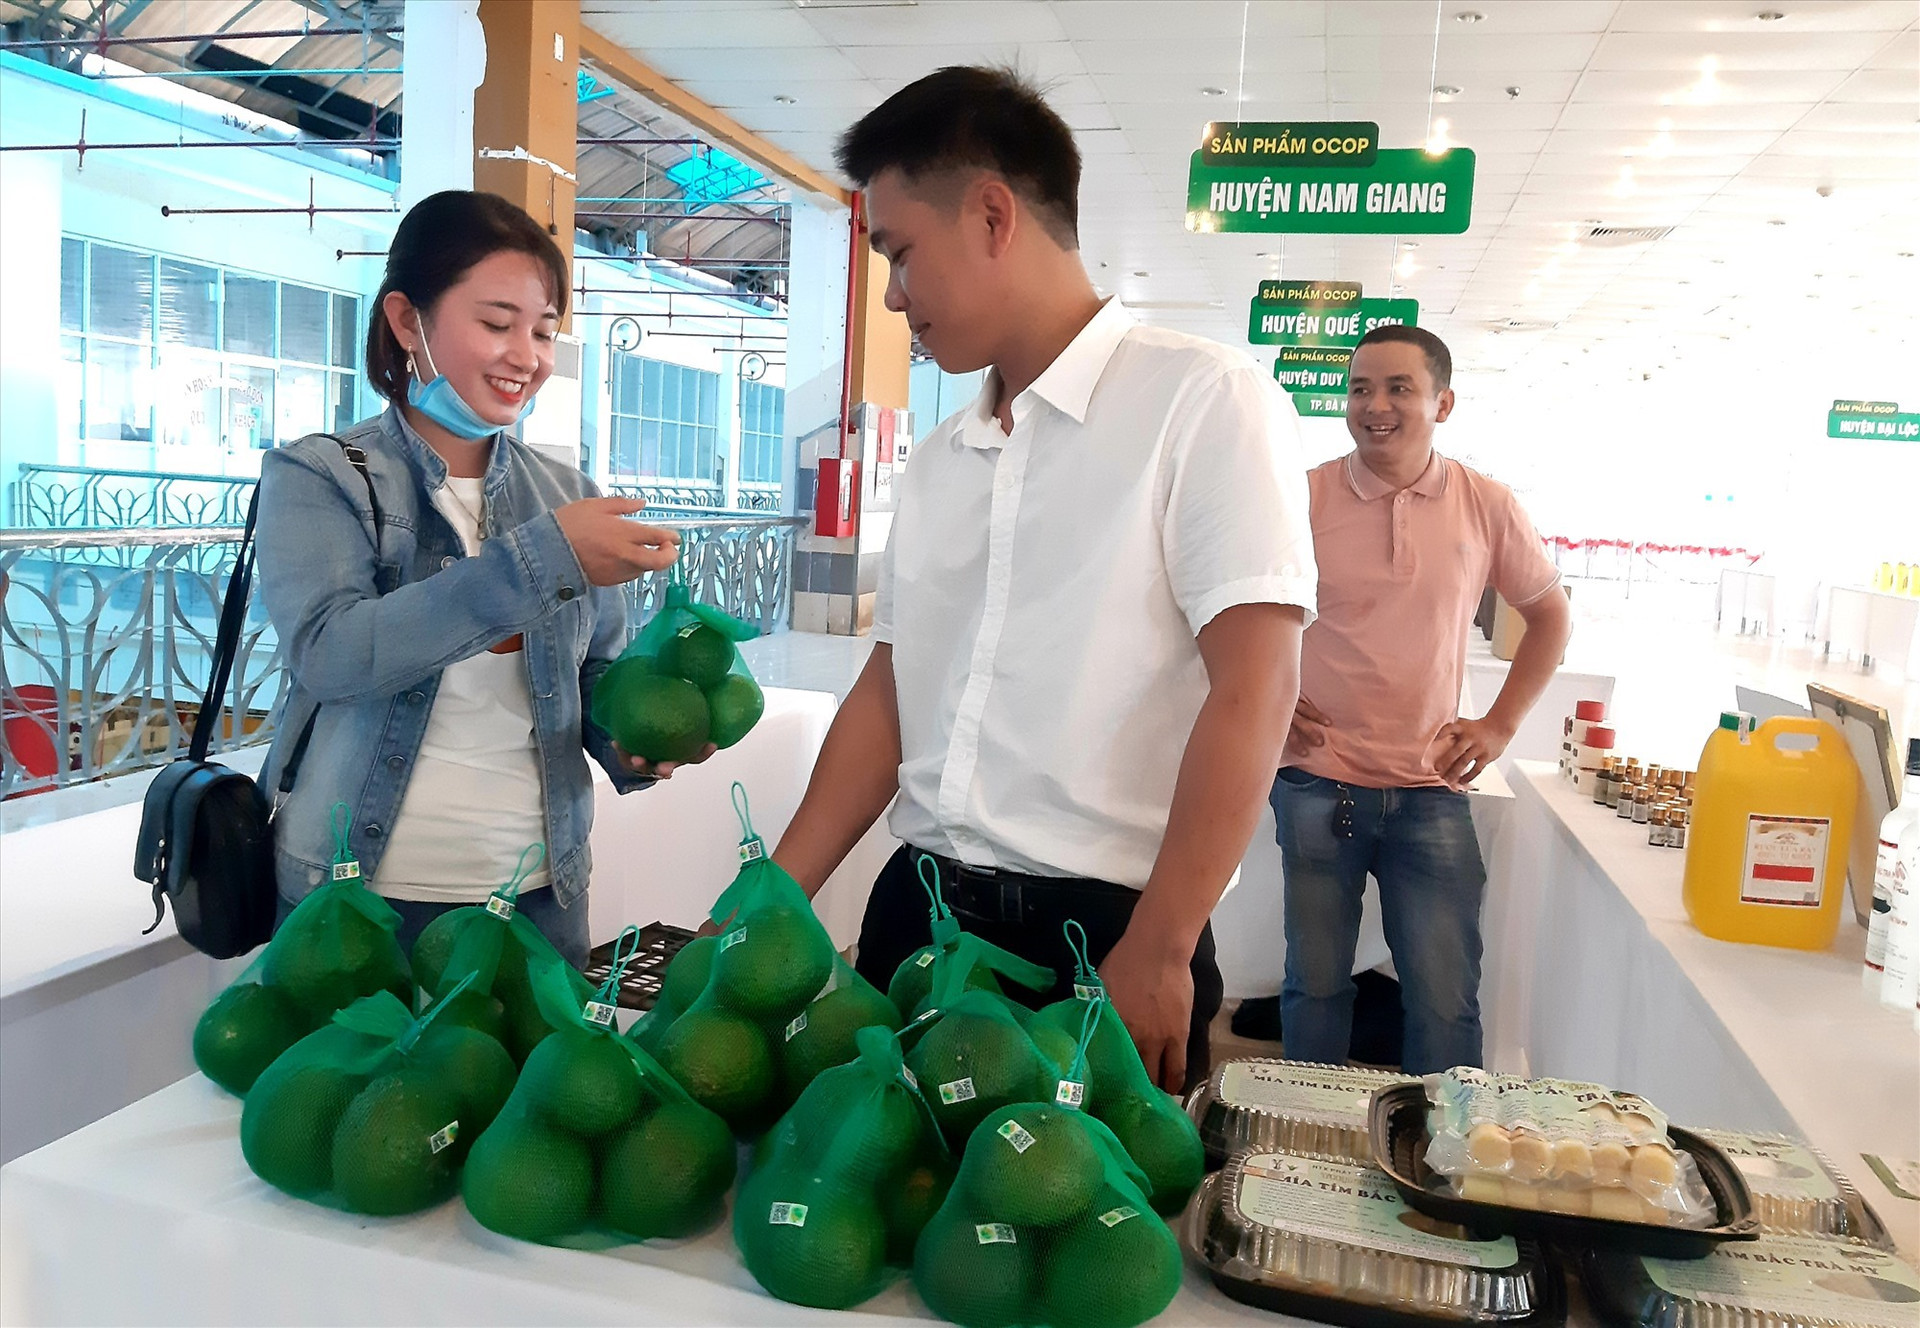 Hợp tác xã Nông nghiệp Trà Dương mong các đơn vị liên quan hỗ trợ đưa sản phẩm cam sành vào bày bán tại các siêu thị và những cửa hàng cung ứng trái cây ăn quả sạch. Ảnh: S.V